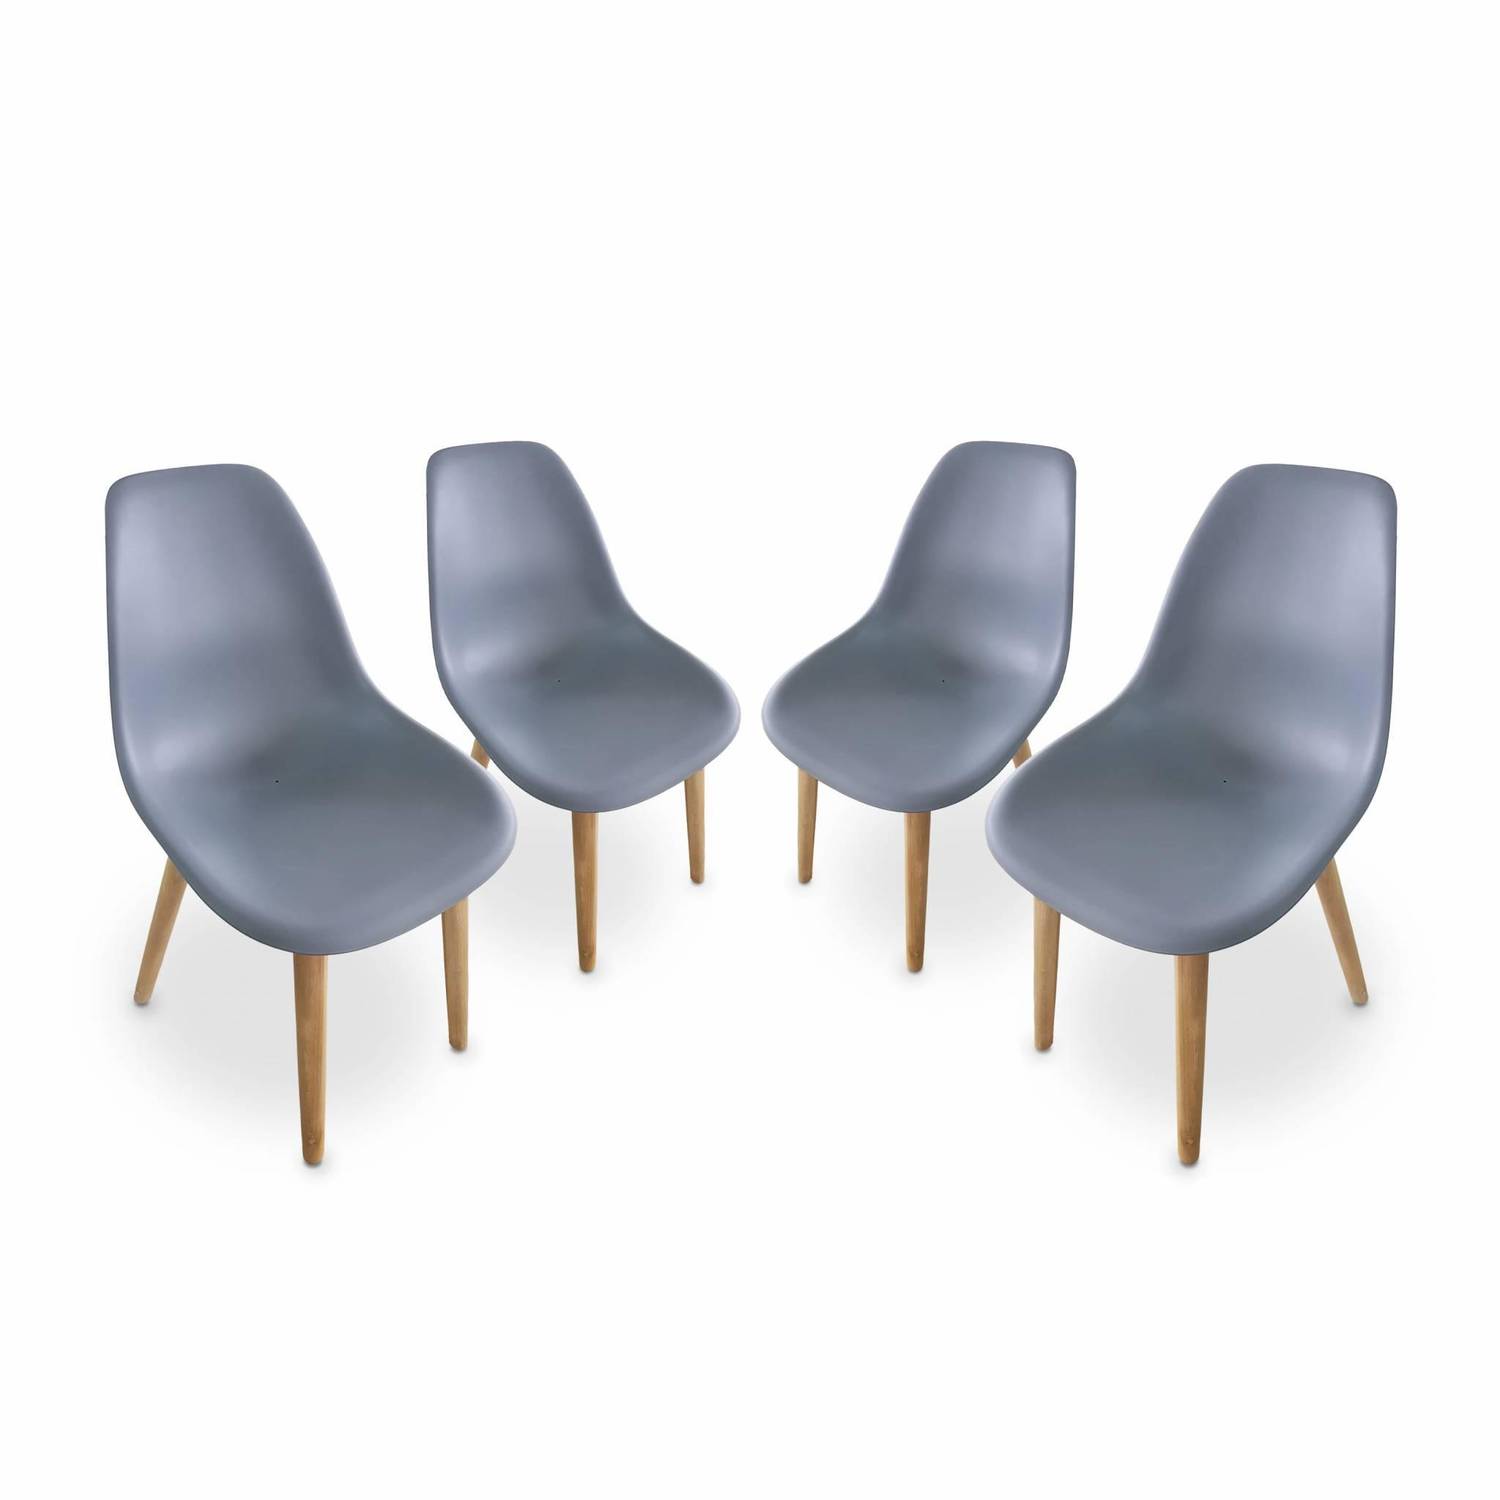 4er Set skandinavische Stühle Penida, aus Akazienholz und anthrazitfarbenem Kunstharz gespritzt, innen/außen Photo1